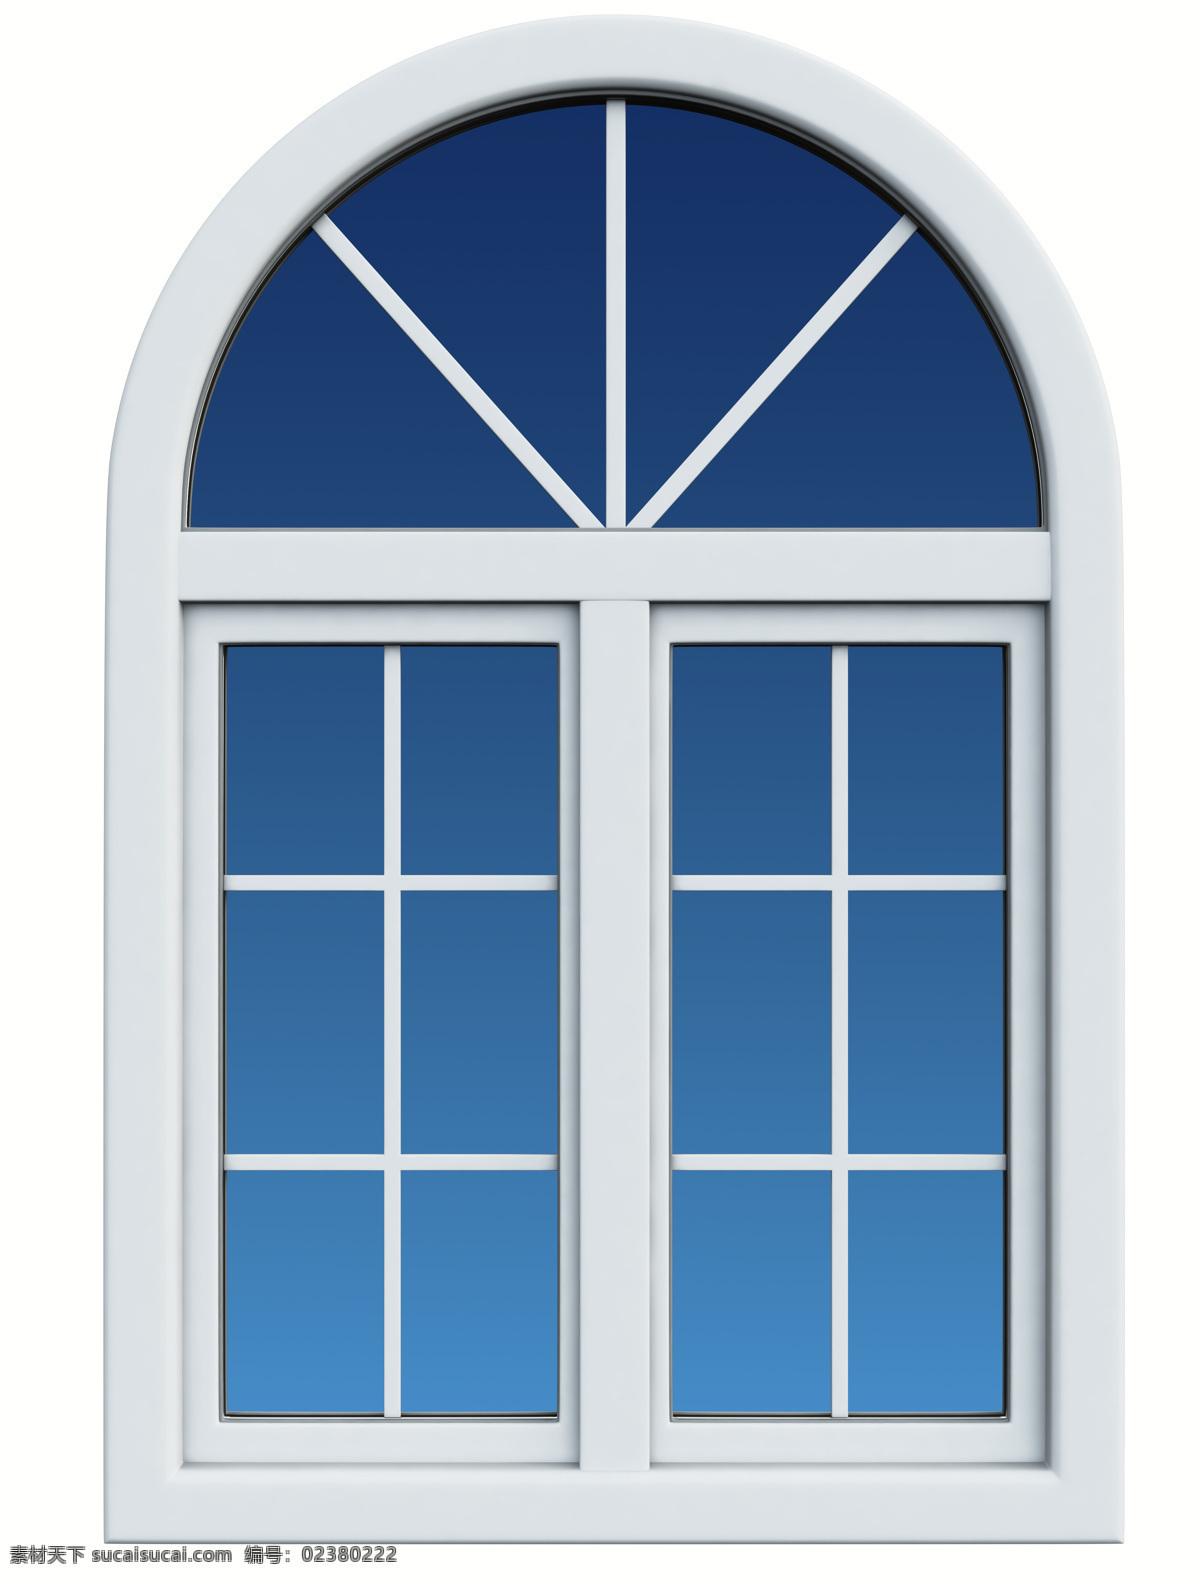 窗户 窗口 欧式窗户设计 其他类别 室内设计 环境家居 白色